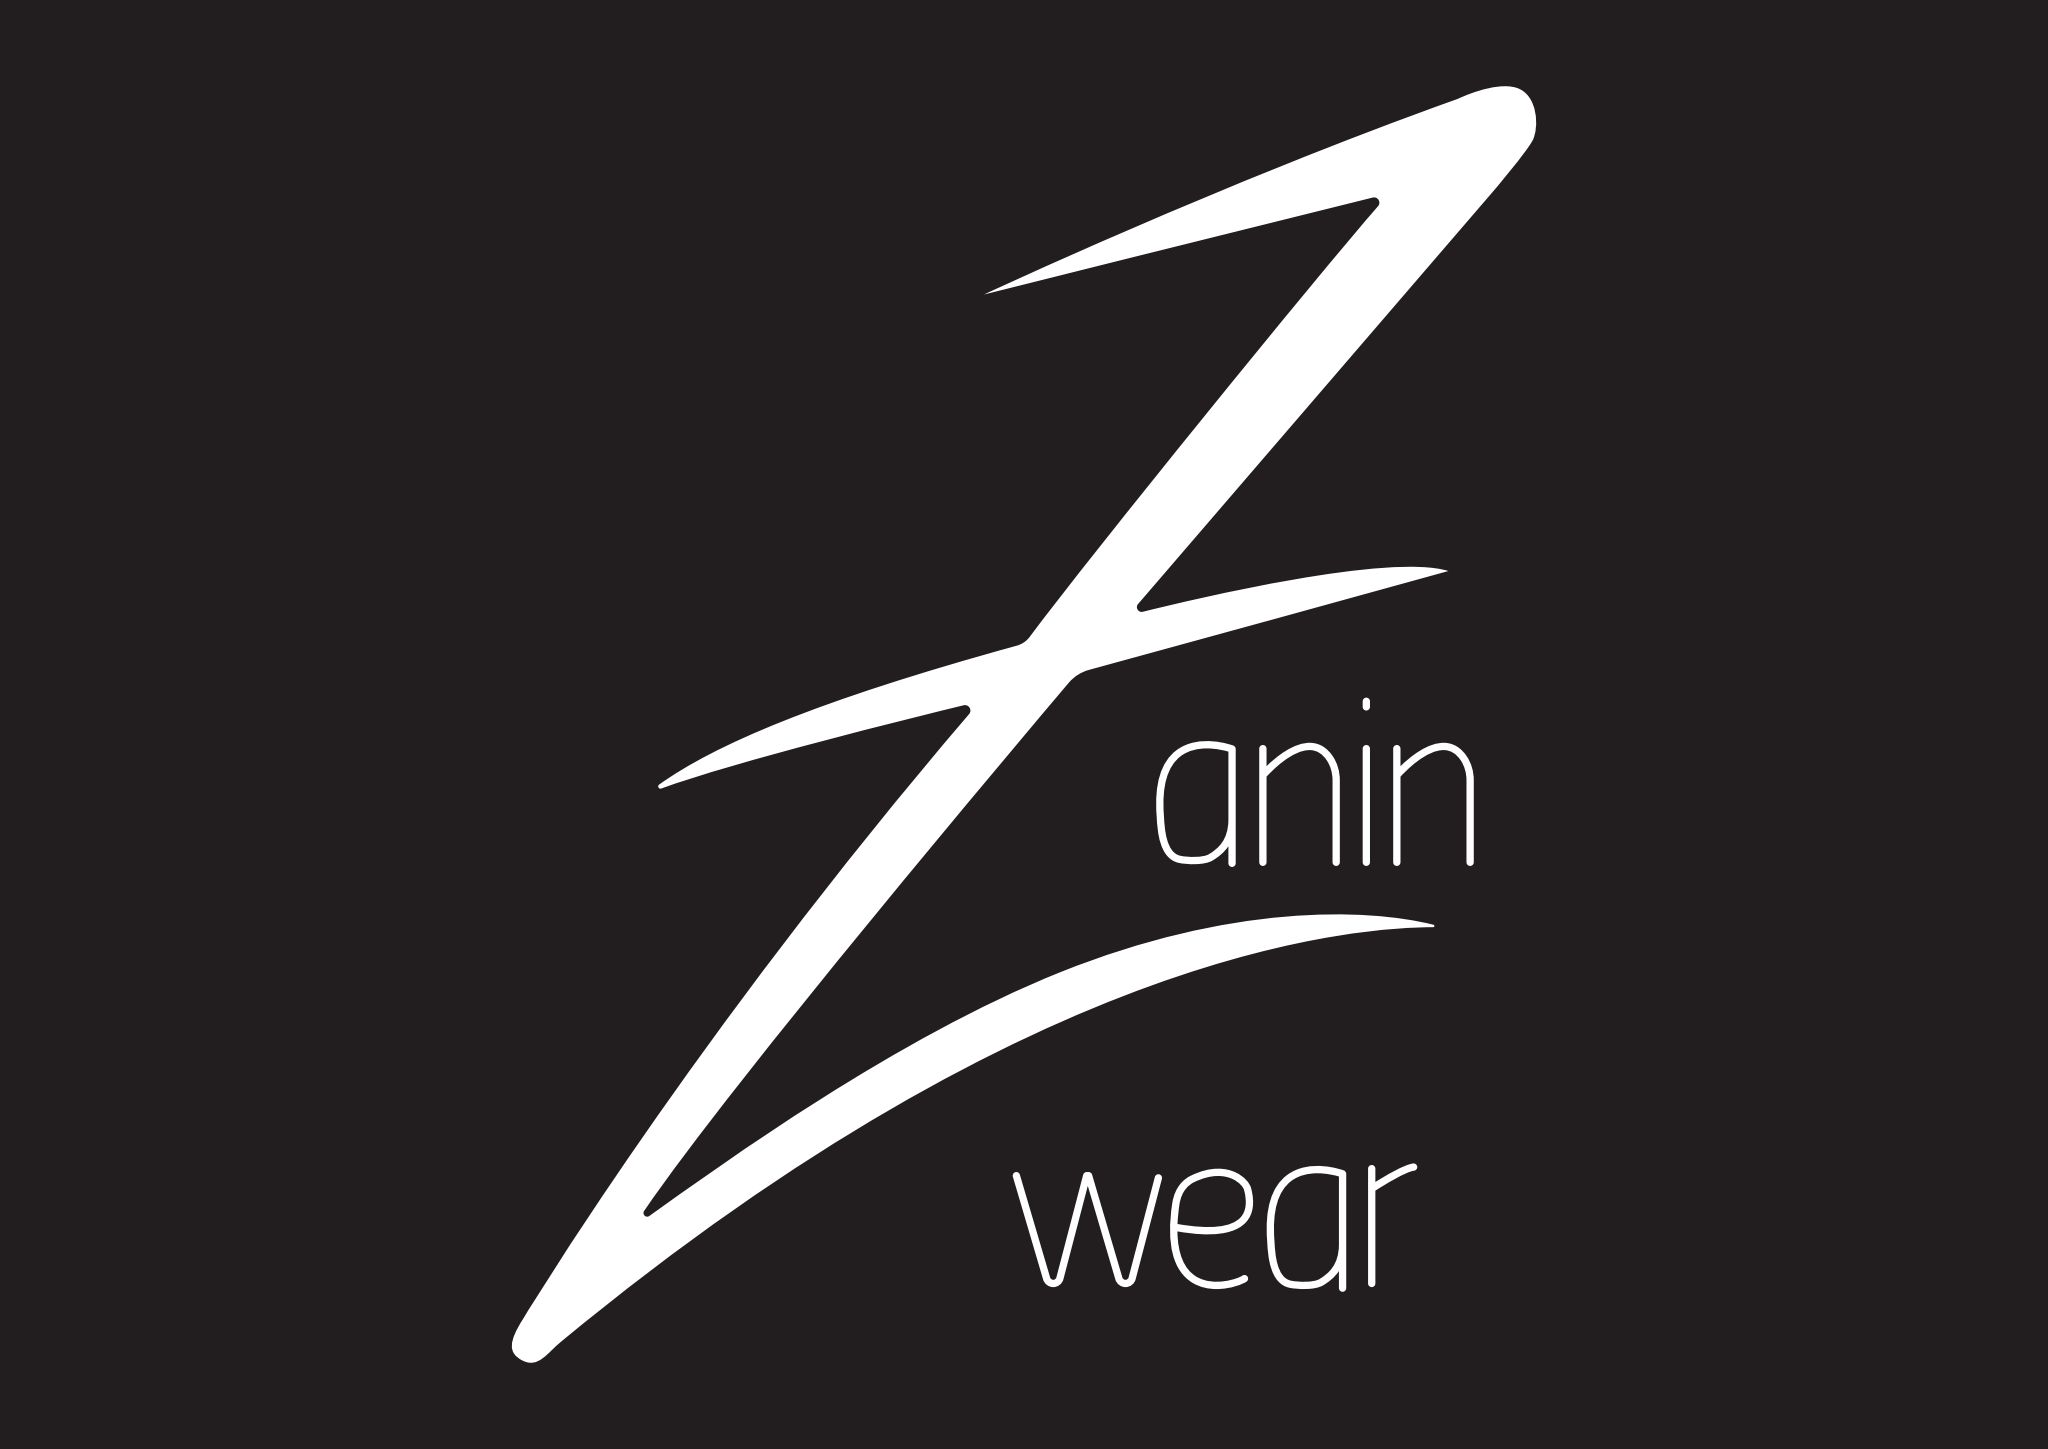 Zanin Wear